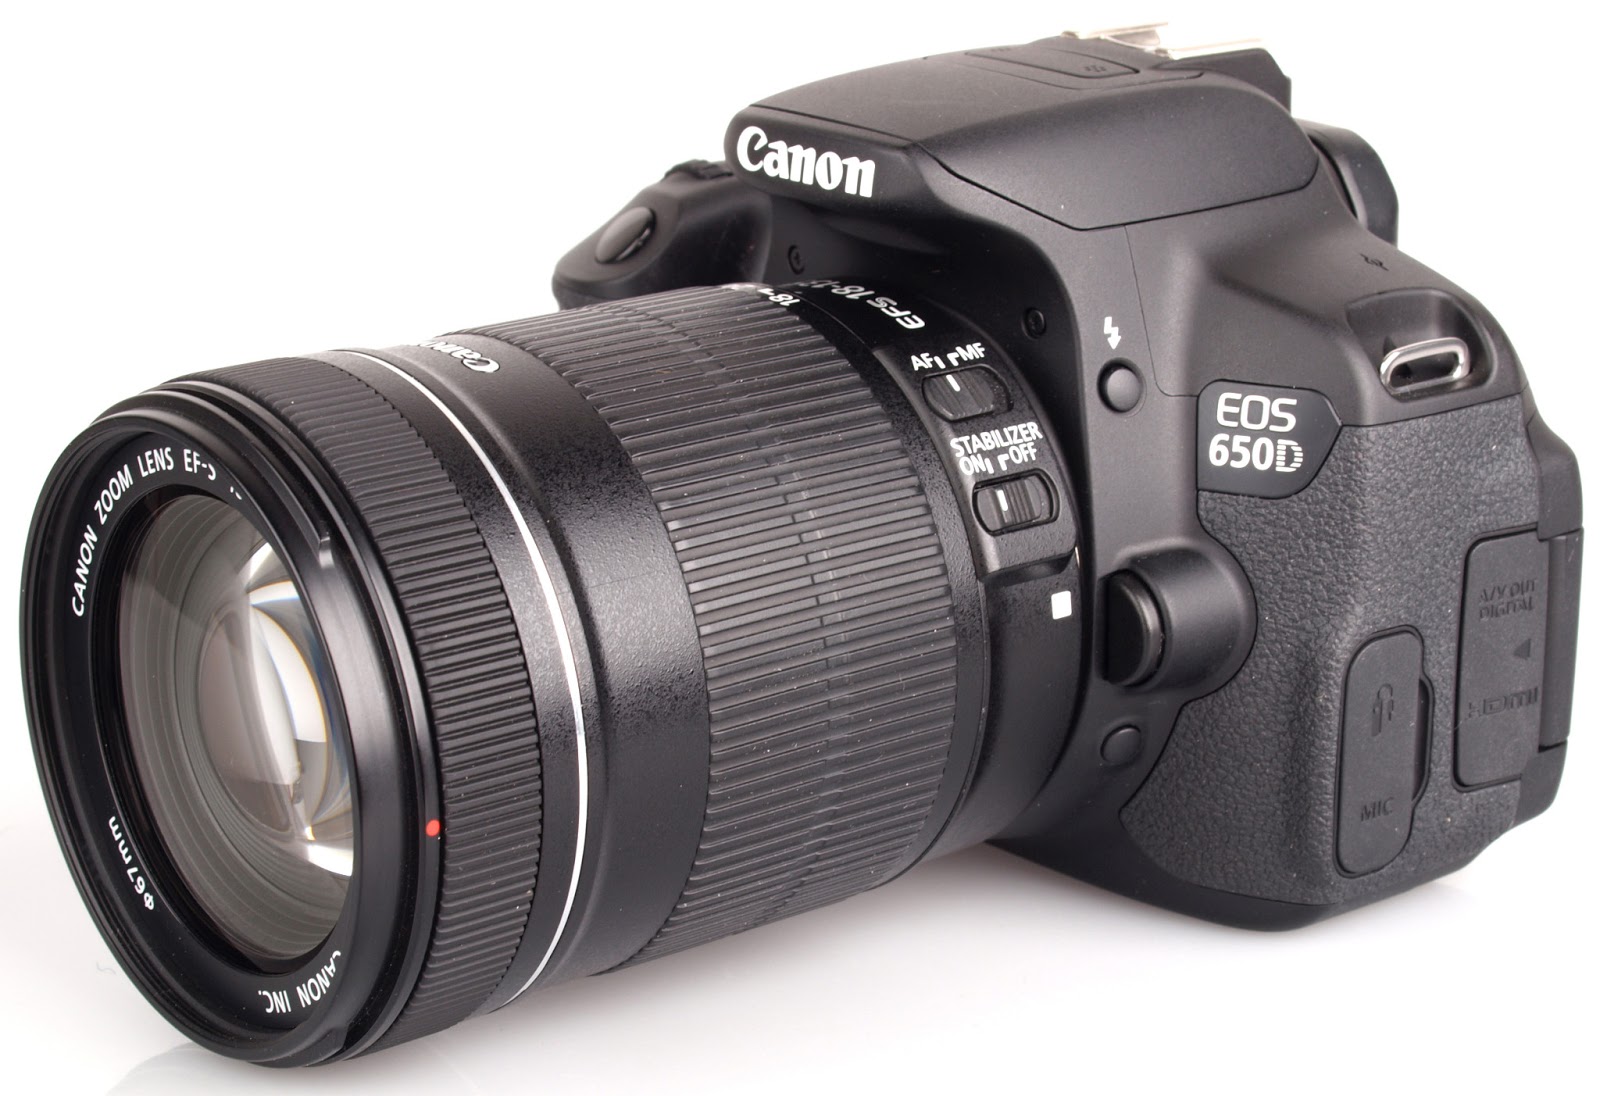 Daftar Harga Kamera DSLR Canon EOS Terbaru Juli 2013